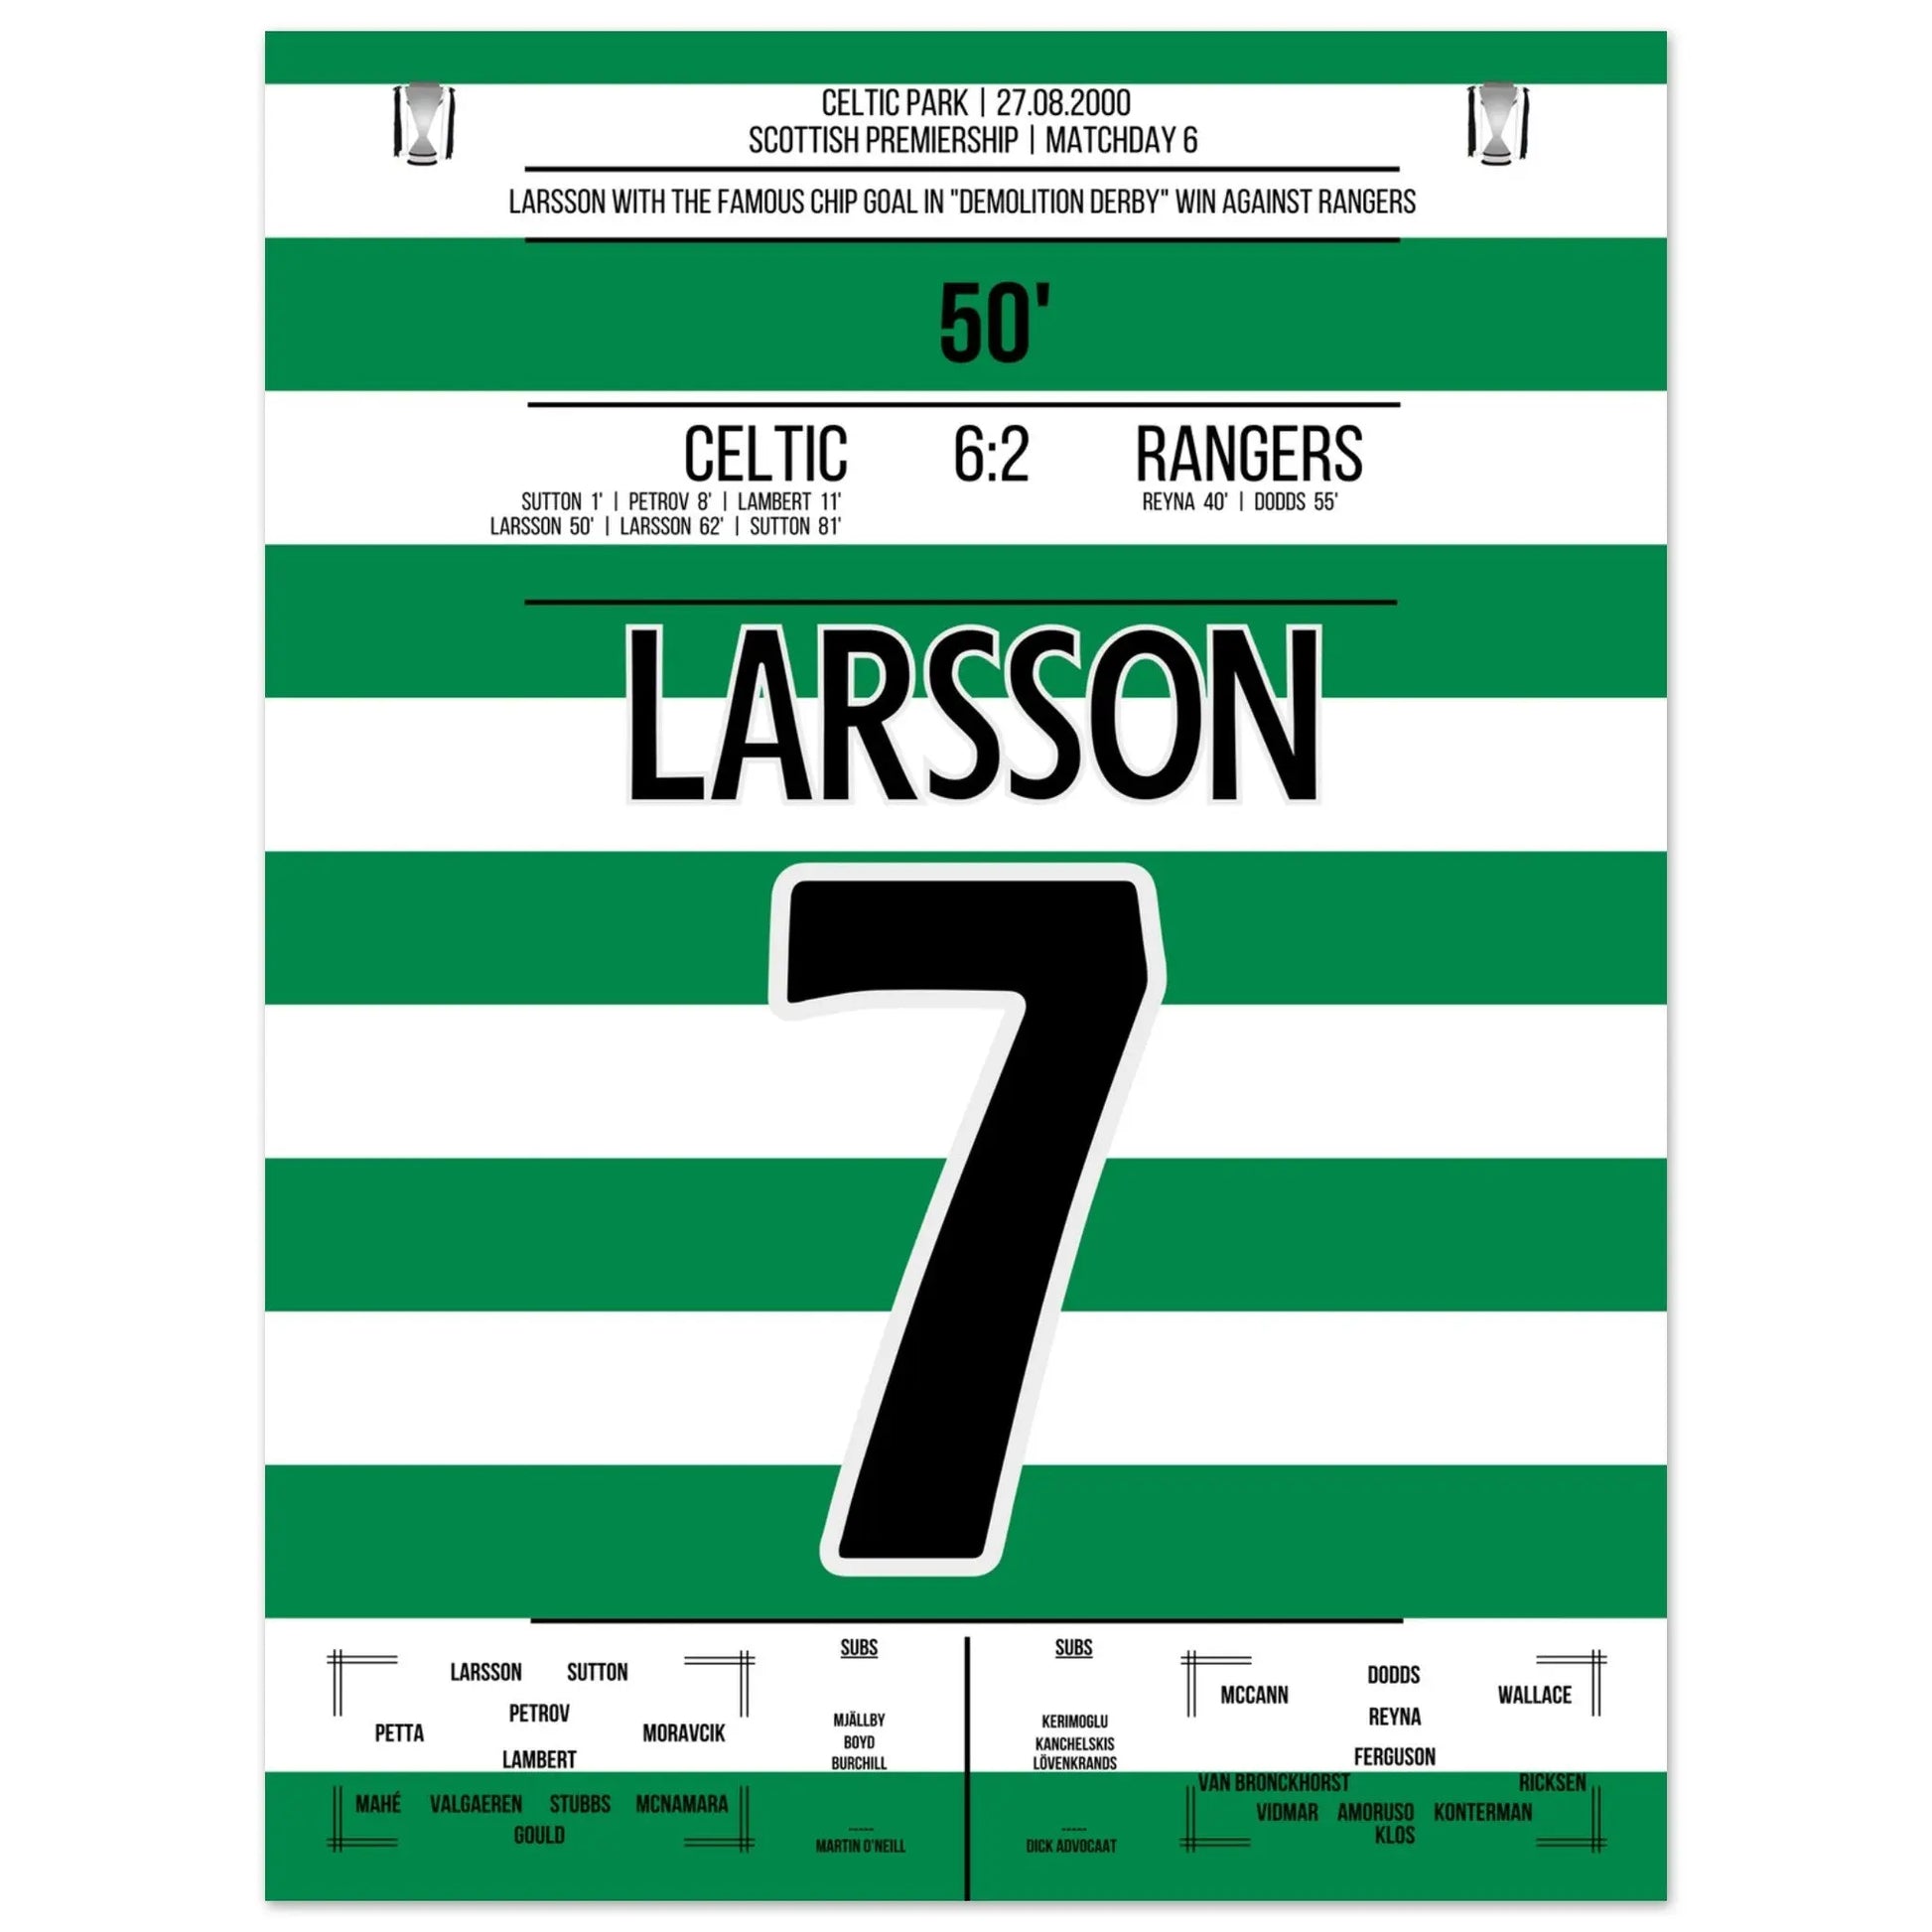 Larsson's legendärer "Chip" im "Demolition Derby" in 2000 45x60-cm-18x24-Ohne-Rahmen